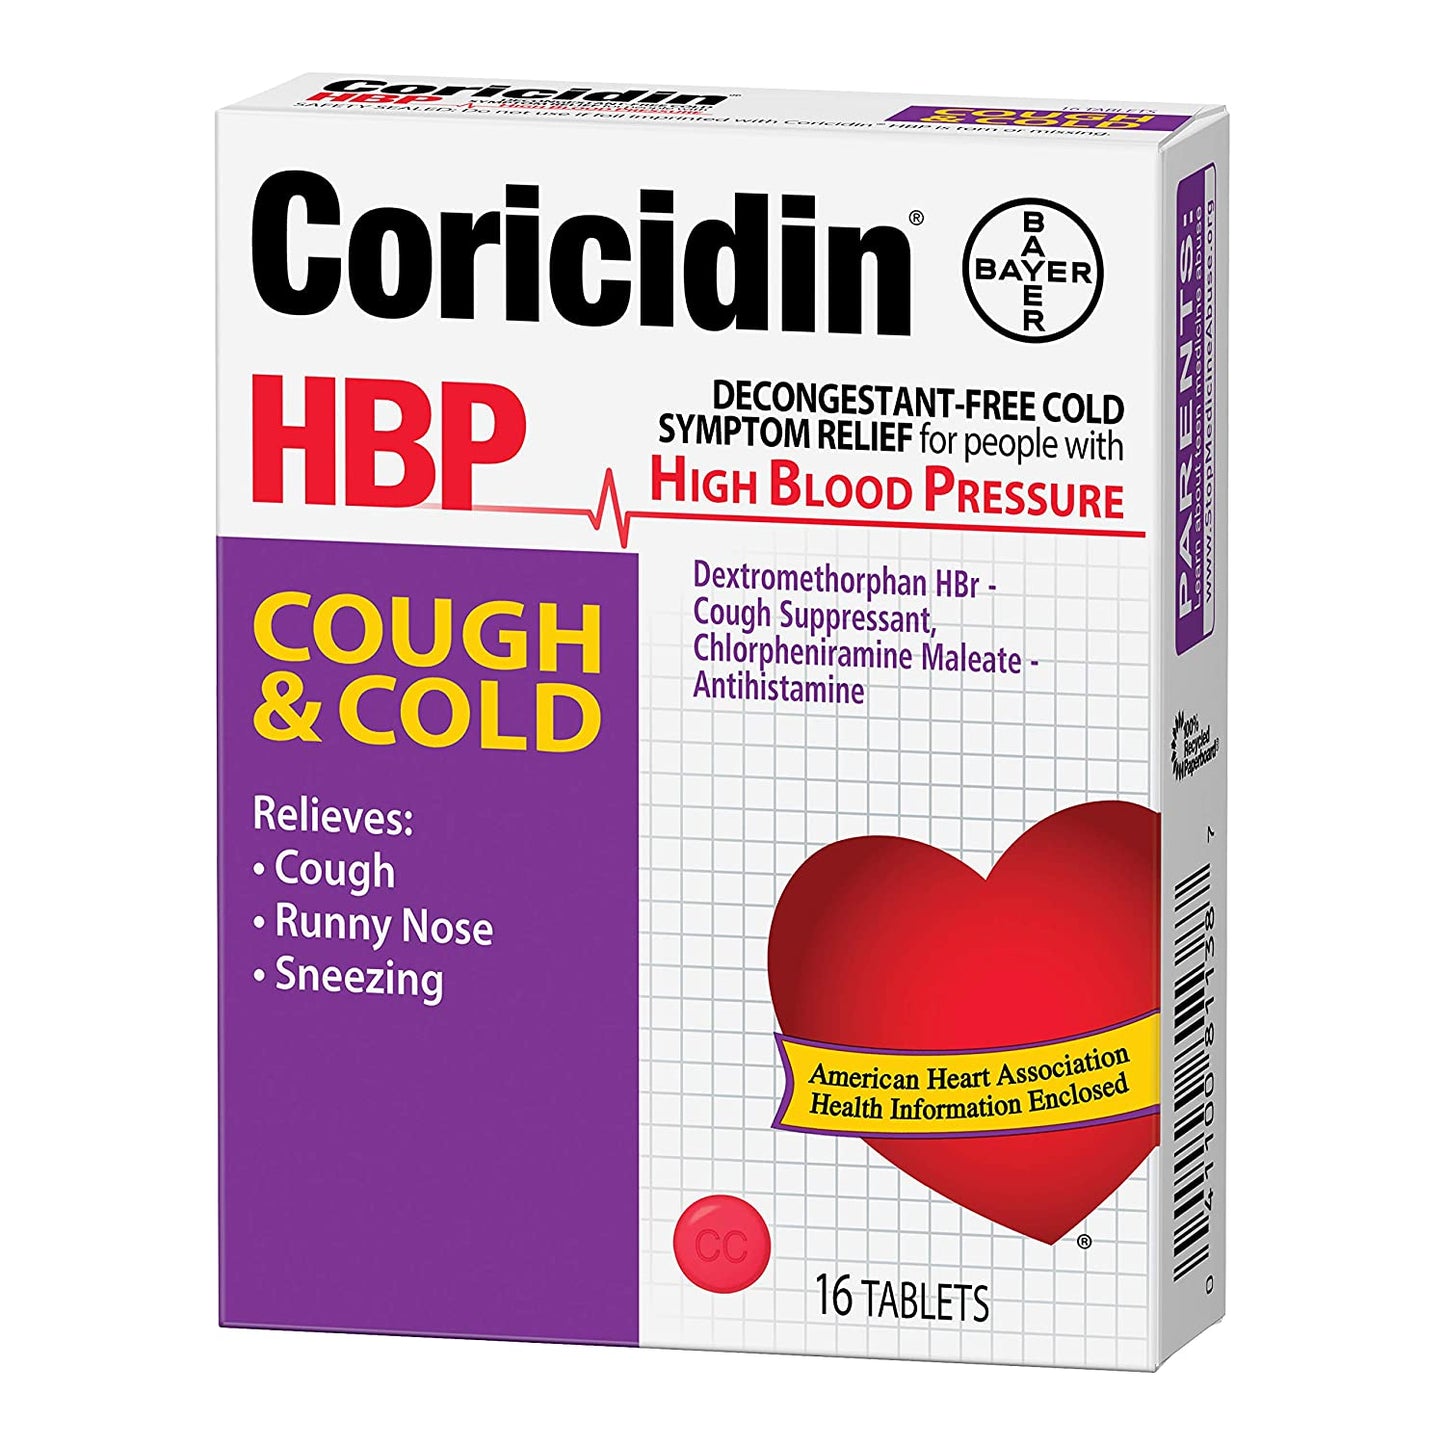 CORICIDIN HBP COUGH & COLD TABLETS